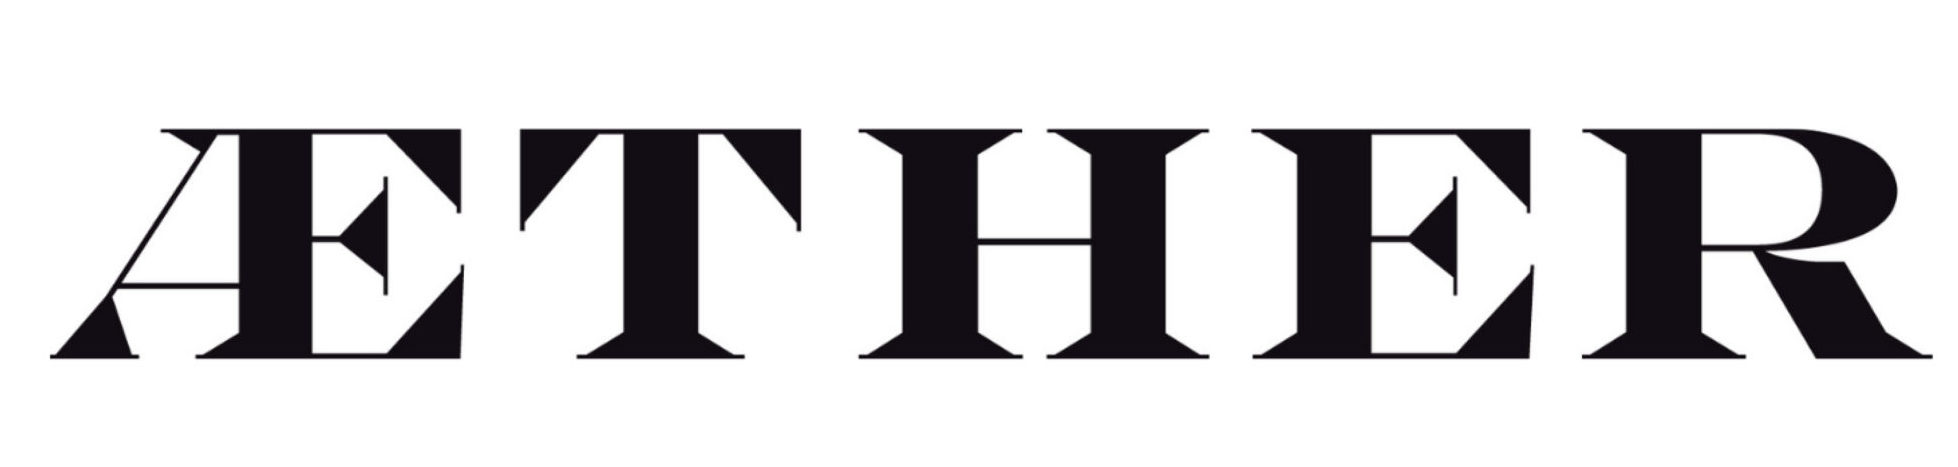 Logo Aether